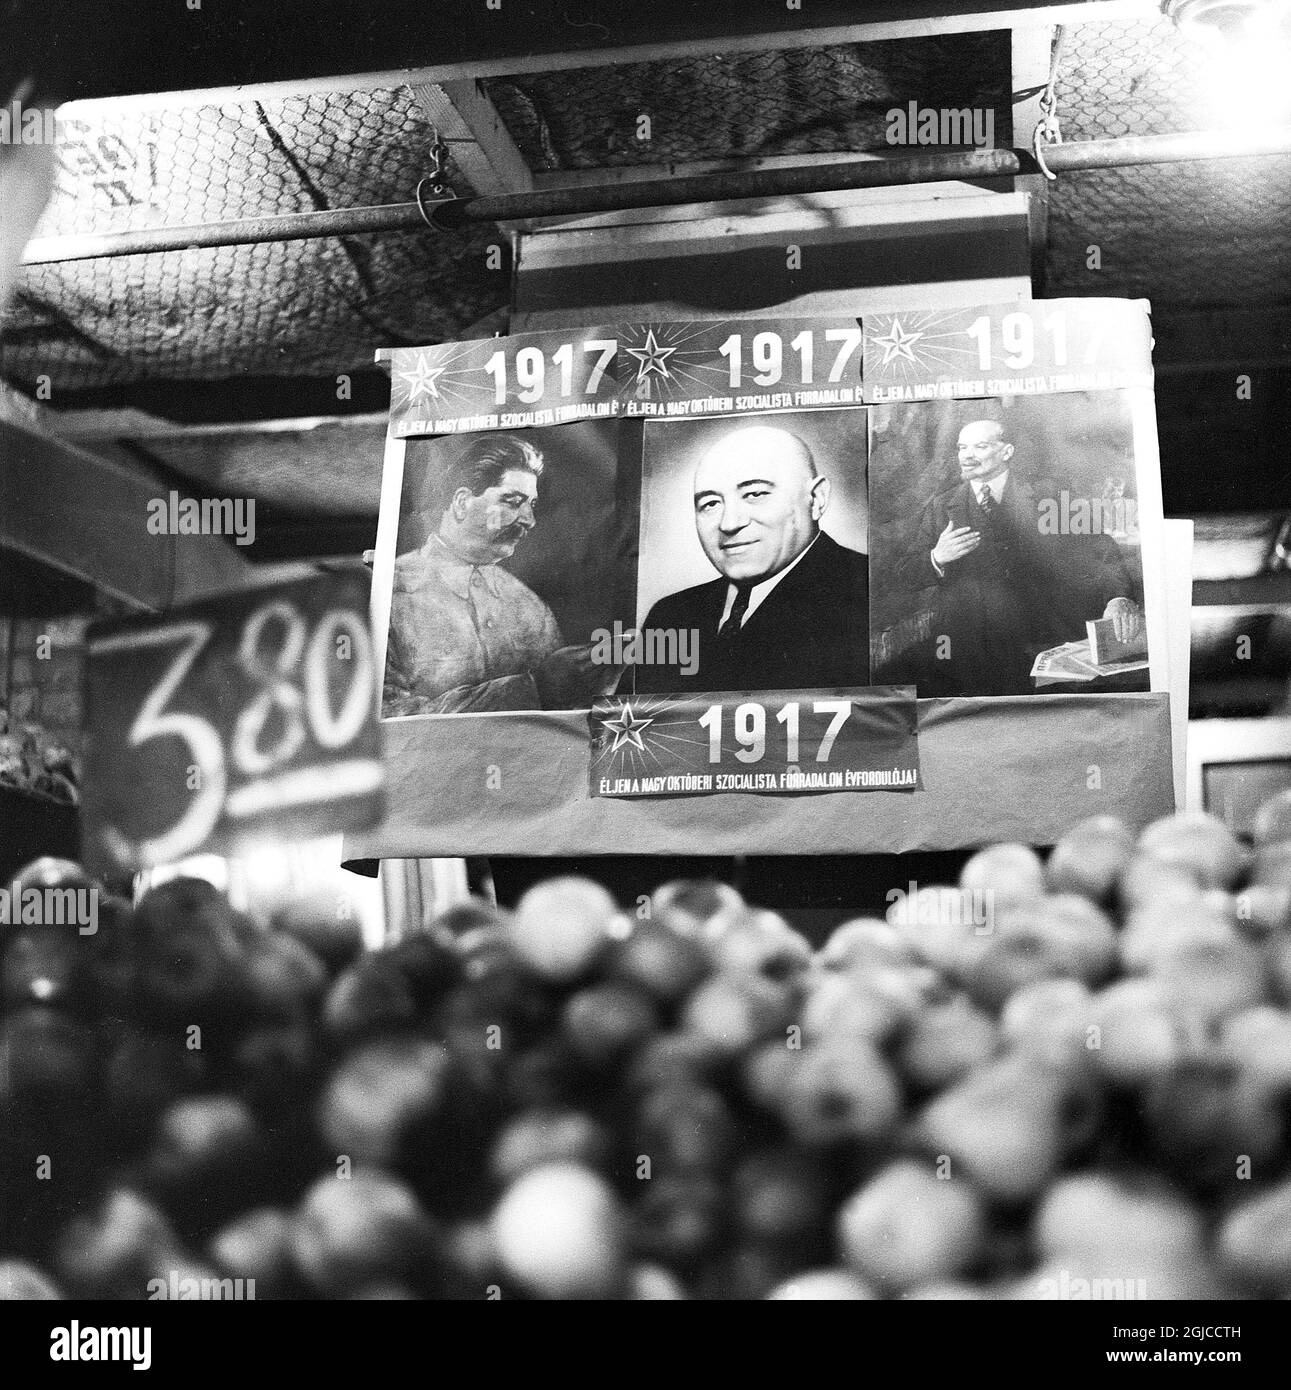 BUDAPEST 1956 Image de propagande pro-soviétique sur un marché de Budapest, Hongrie, lors de la révolution nationale contre la République populaire hongroise et ses politiques imposées par les Soviétiques, du 23 octobre au 10 novembre 1956. Le portrait au milieu montre Mátyás rákosi, le dirigeant communiste hongrois, flanqué des dirigeants soviétiques Josef Staline, à gauche, et Vladimir Lénine, à droite. Photo: Anders Engman / Bonnierarkivet / TT / Kod: 3010 Banque D'Images